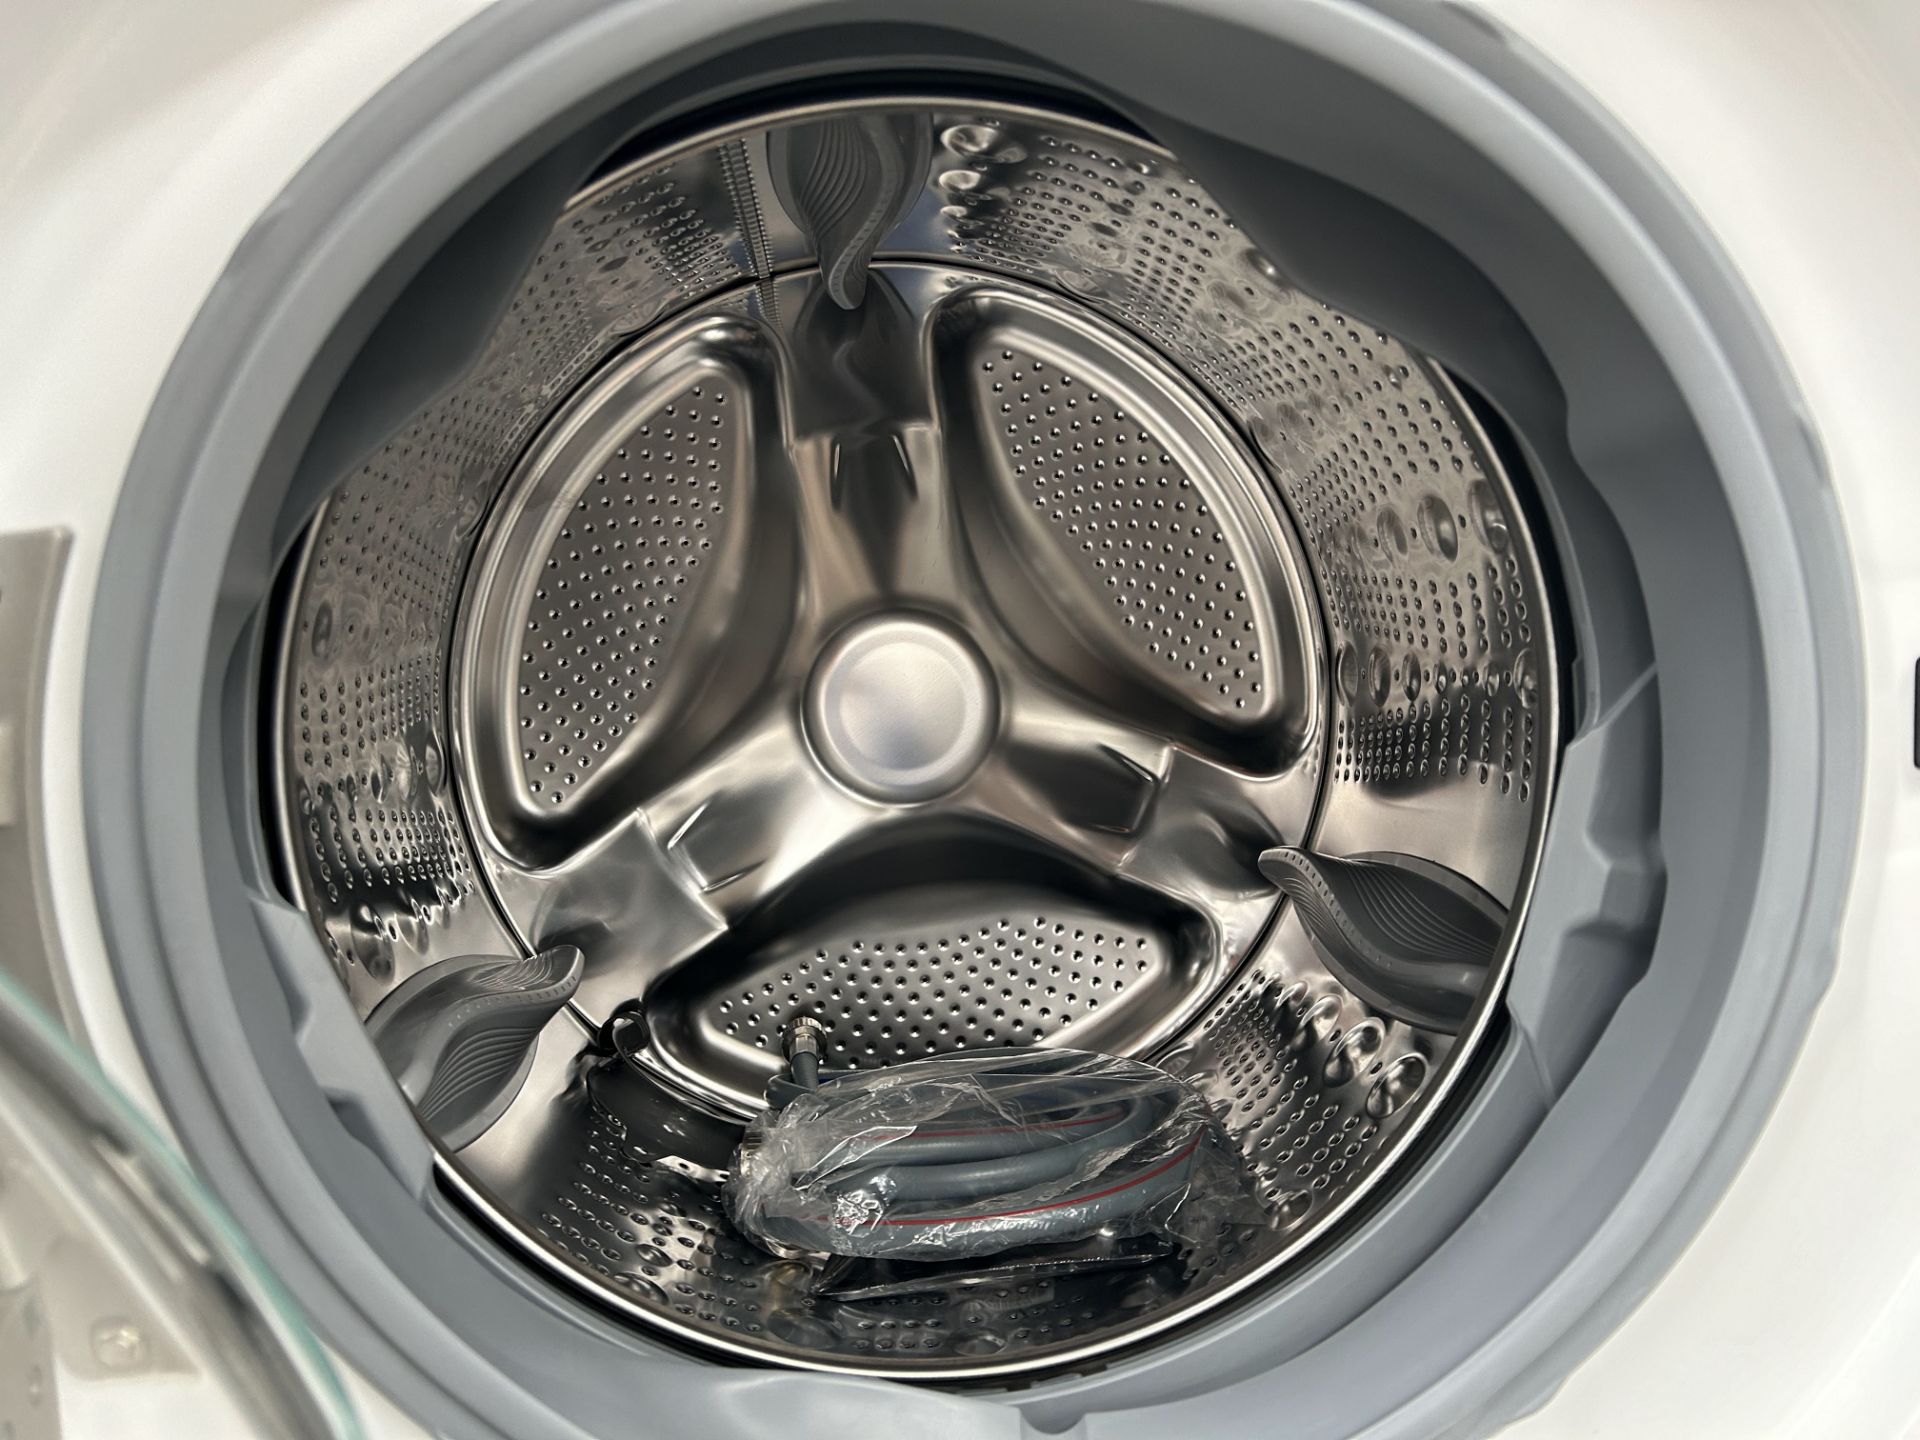 Combo lavadora y Secadora contiene: 1 Lavadora de 20 KG Marca LG, Modelo WM202V26W, Serie 0X531, Co - Image 5 of 8